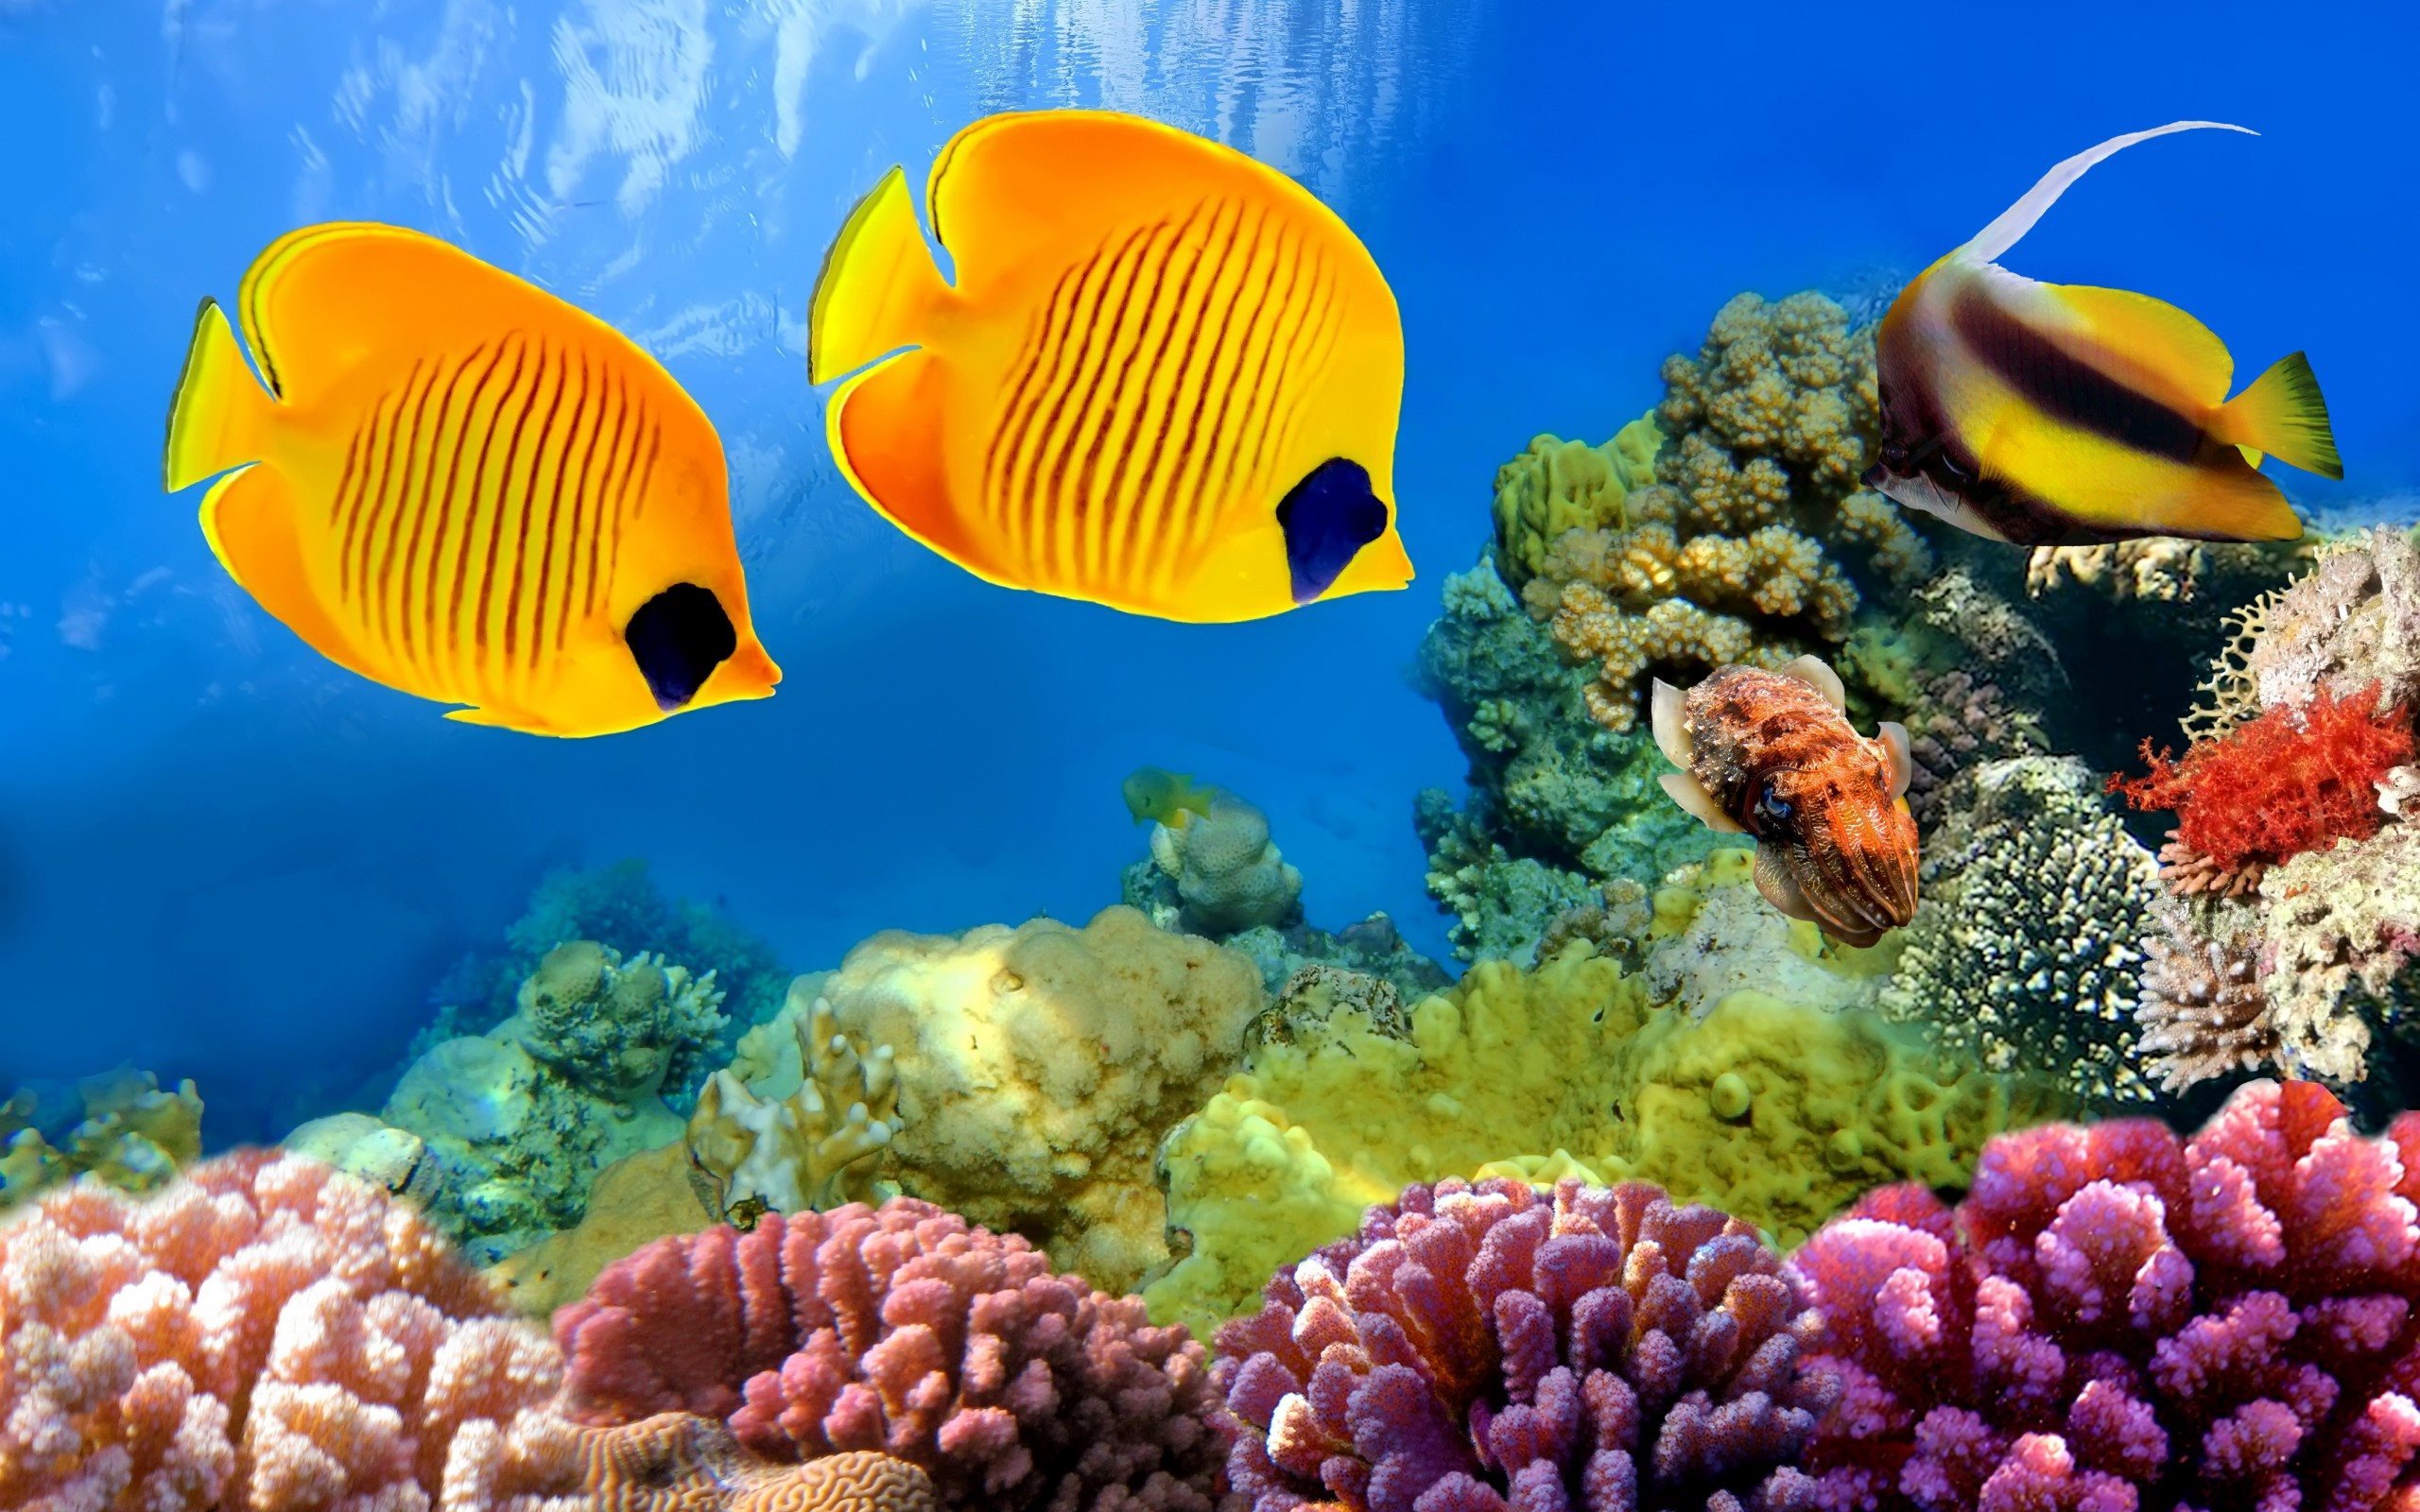 ダウンロード画像 ダイビング Underrwater トロピカルアイランド 魚 サンゴ 熱帯魚 リーフ 水中世界 海洋 画面の解像度 2560x1600 壁紙デスクトップ上